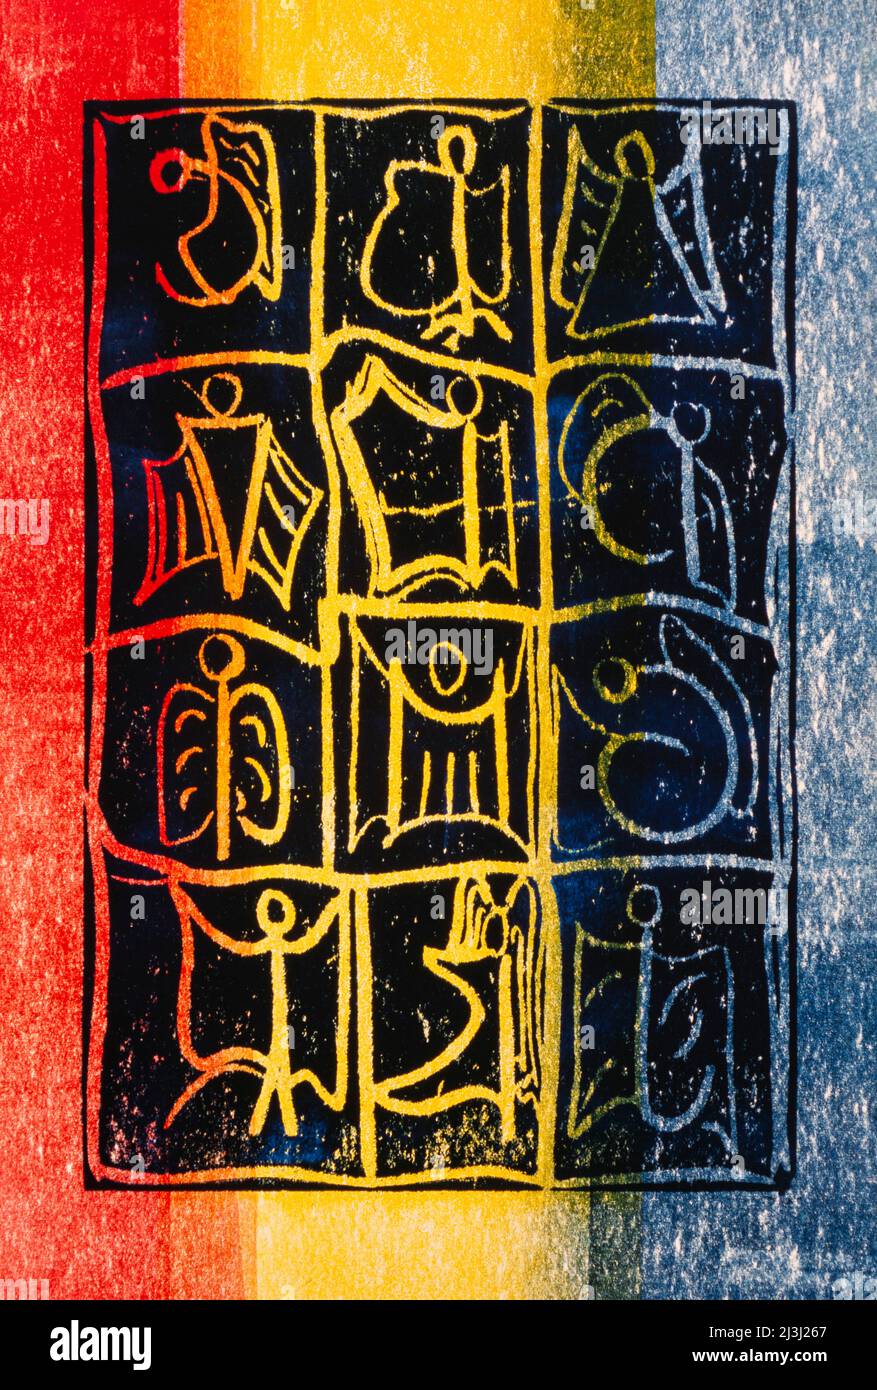 Imprimé graphique par Gisela Oberst douze anges, abstrait, rouge, jaune, bleu, figure d'ange, représentation d'ange, ailé, mystique, êtres célestes Banque D'Images